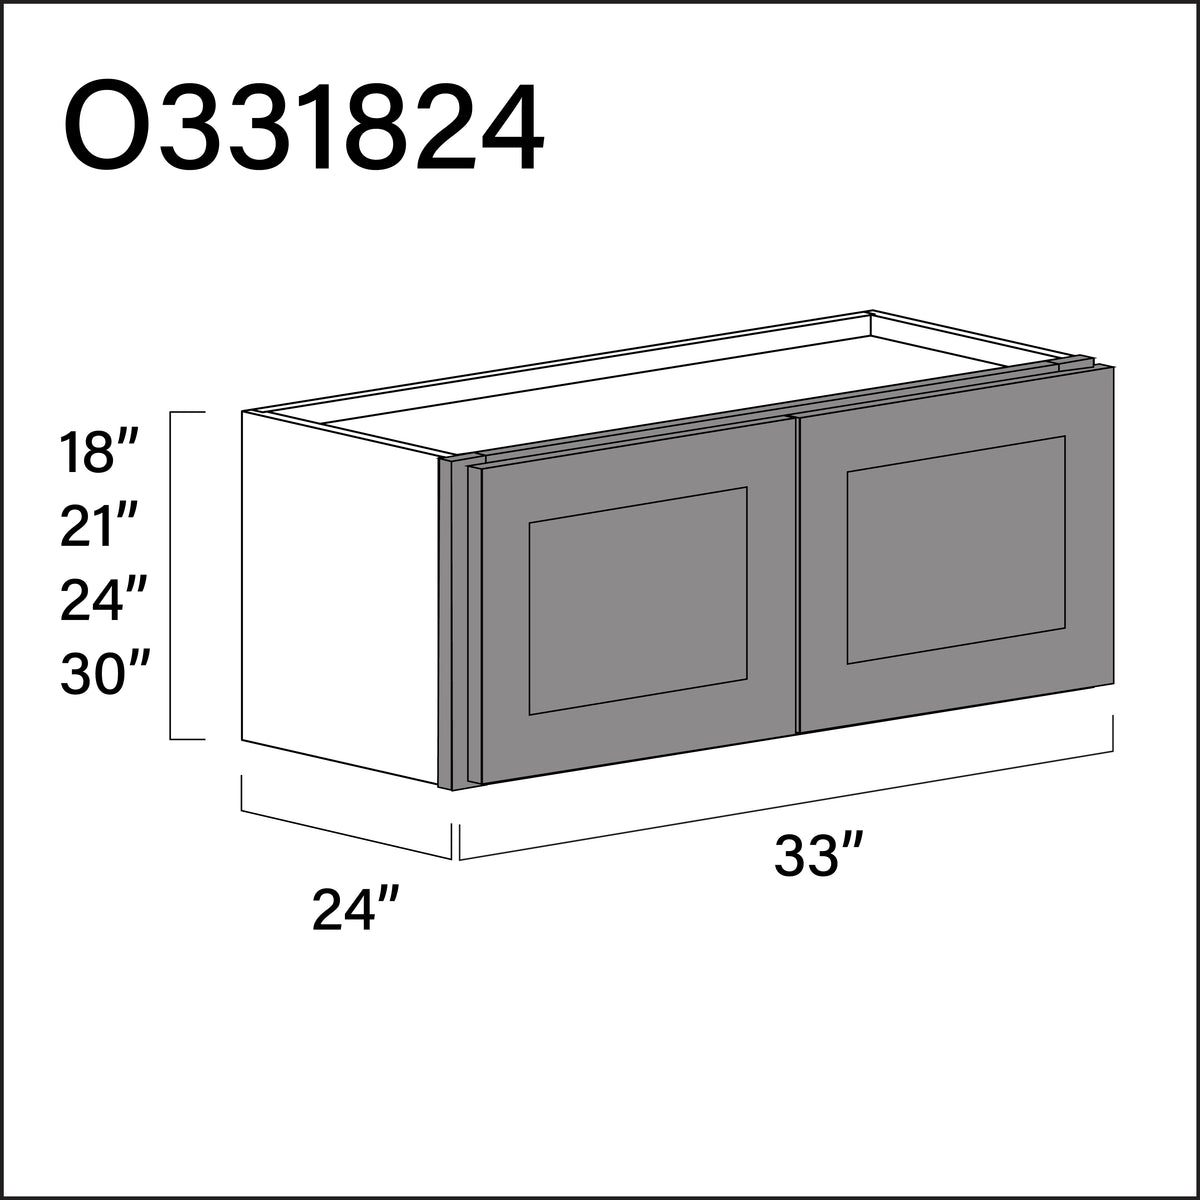 Gray Shaker Double Door Oven Upper Cabinet - 33" W x 18" H x 24" D